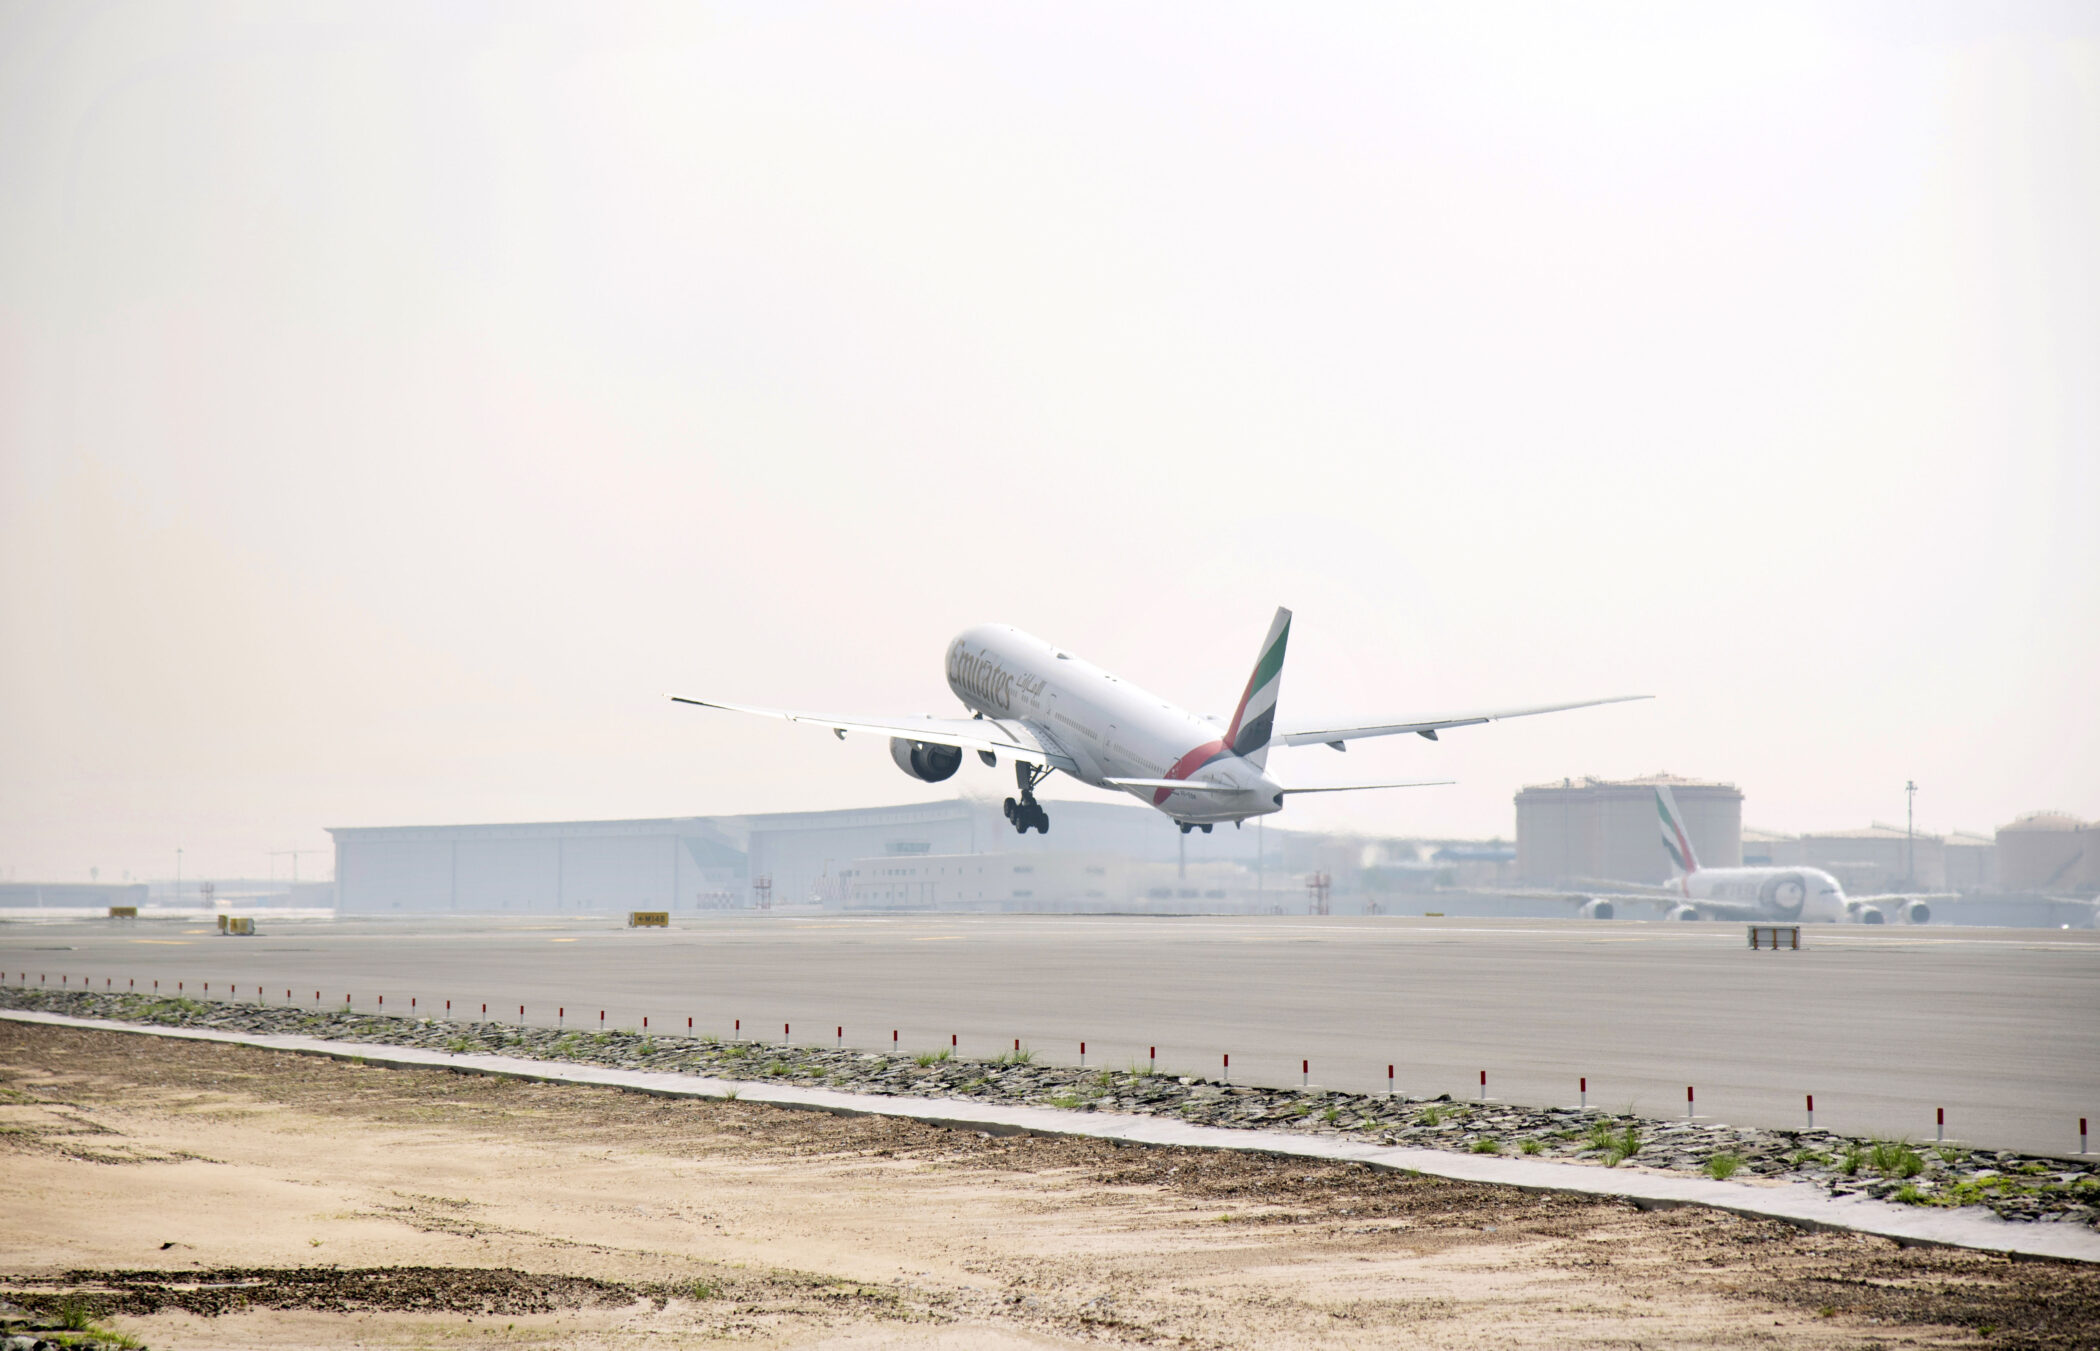 Emirates SAF flight